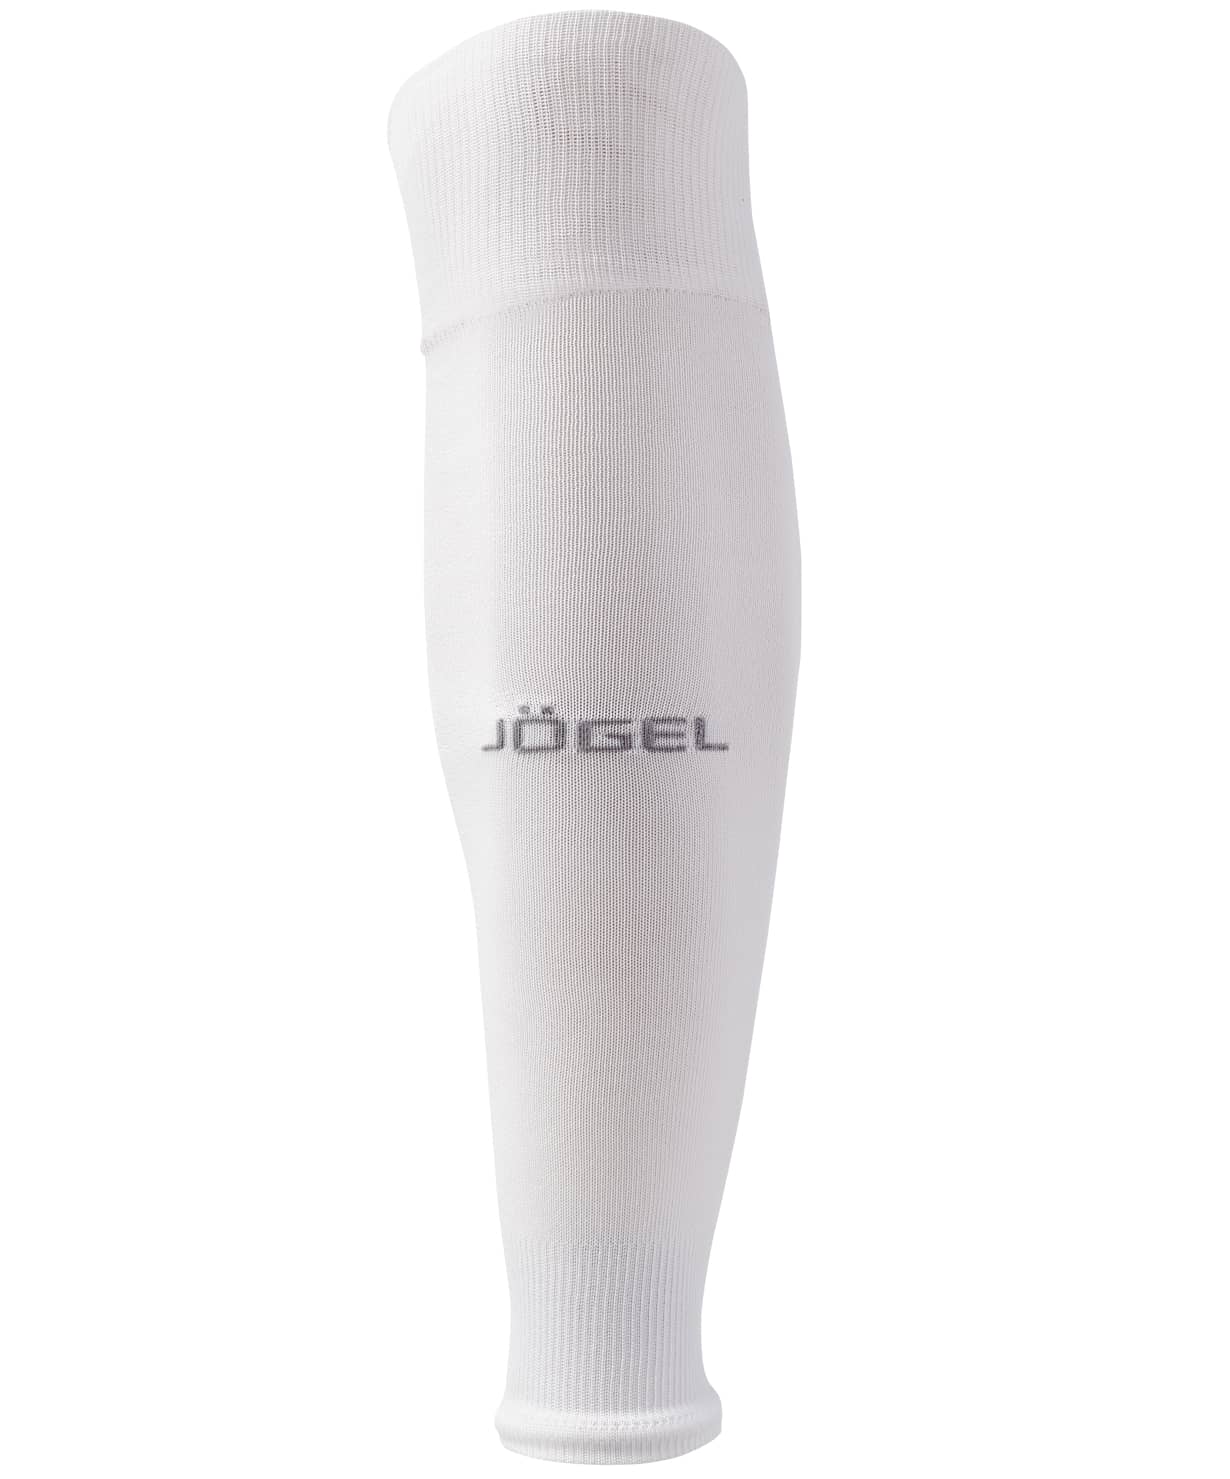 фото Jogel camp basic sleeve socks гольфы футбольные белые Football-54 